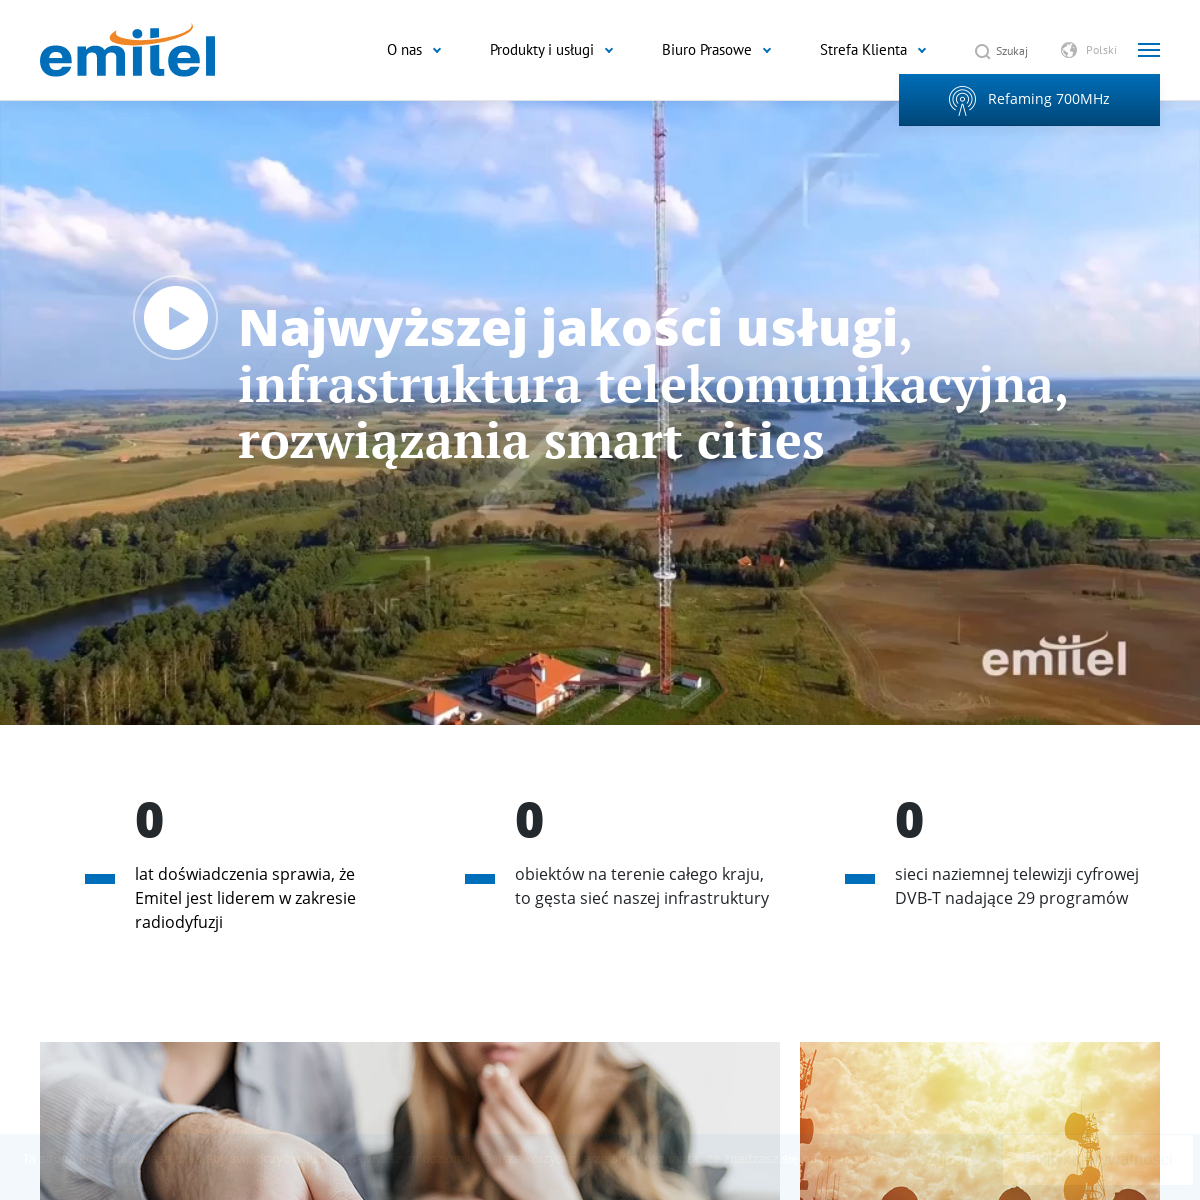 A complete backup of emitel.pl